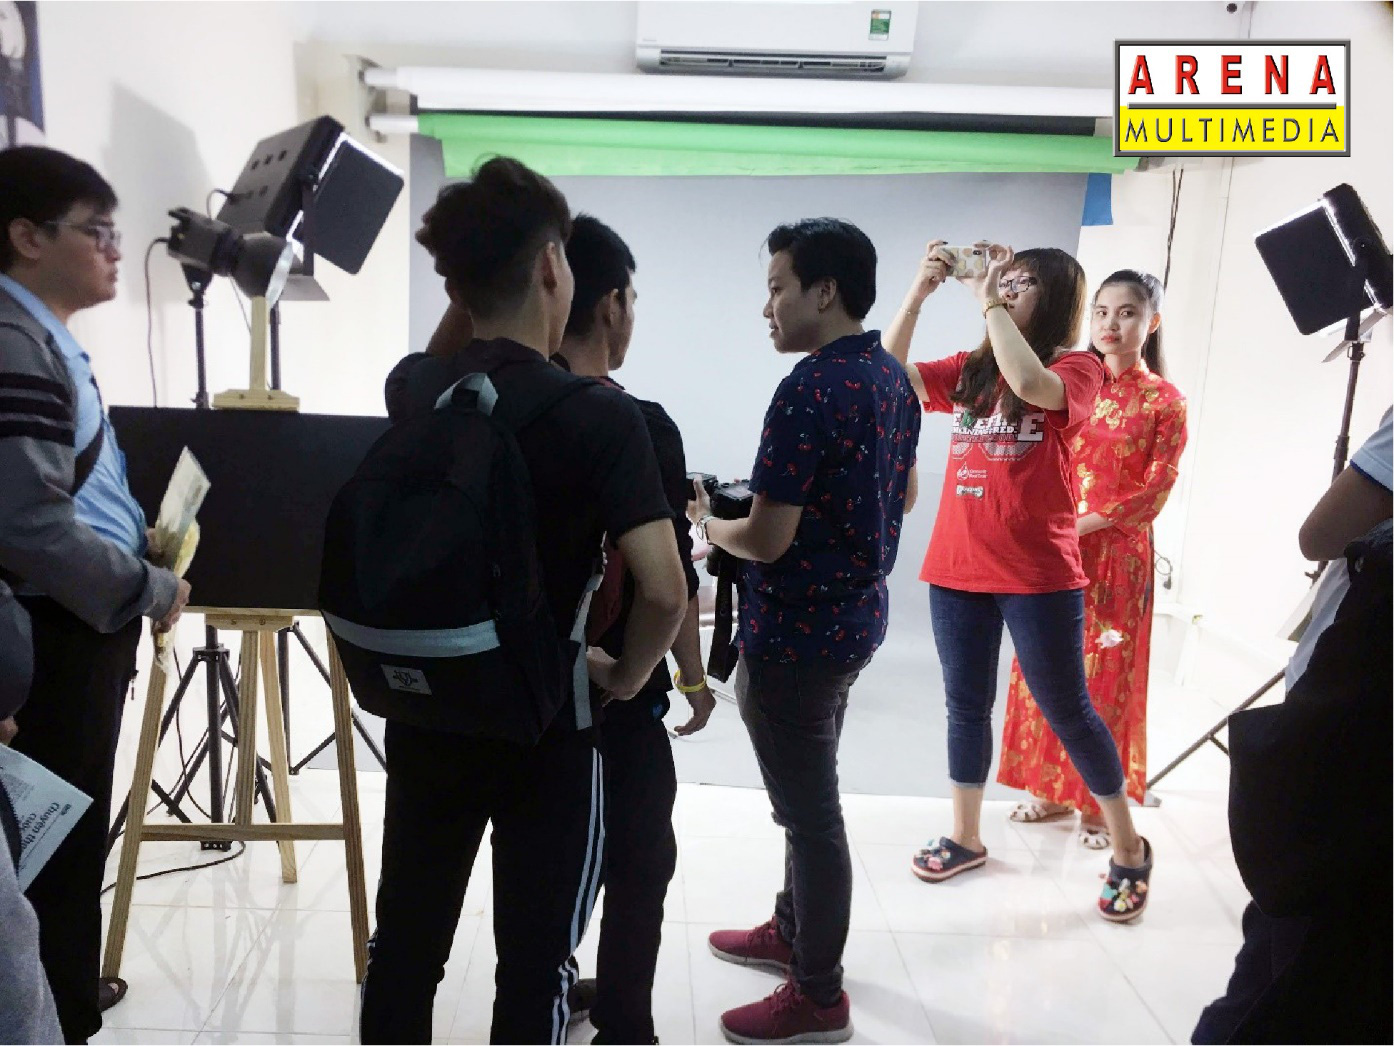 Học viên ARENA Multimedia tại Cần Thơ trong một buổi học môn Chụp hình